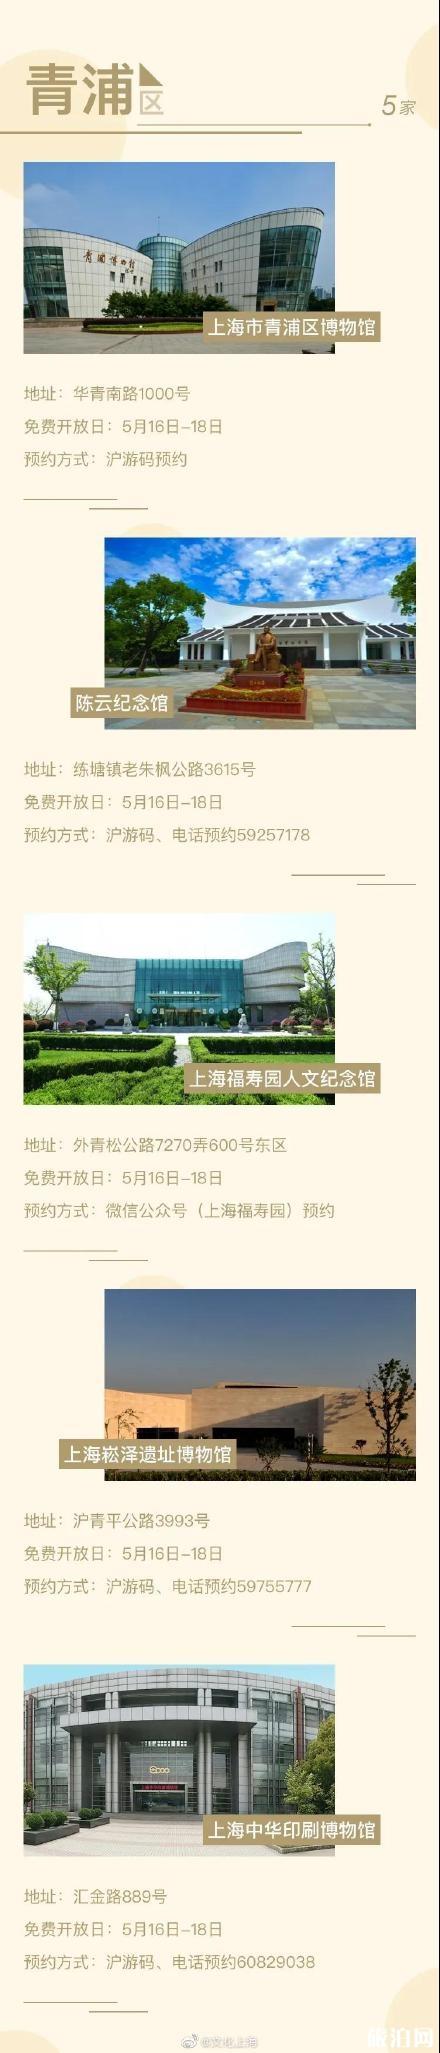 5月18日上海博物馆免费及半价开放名单